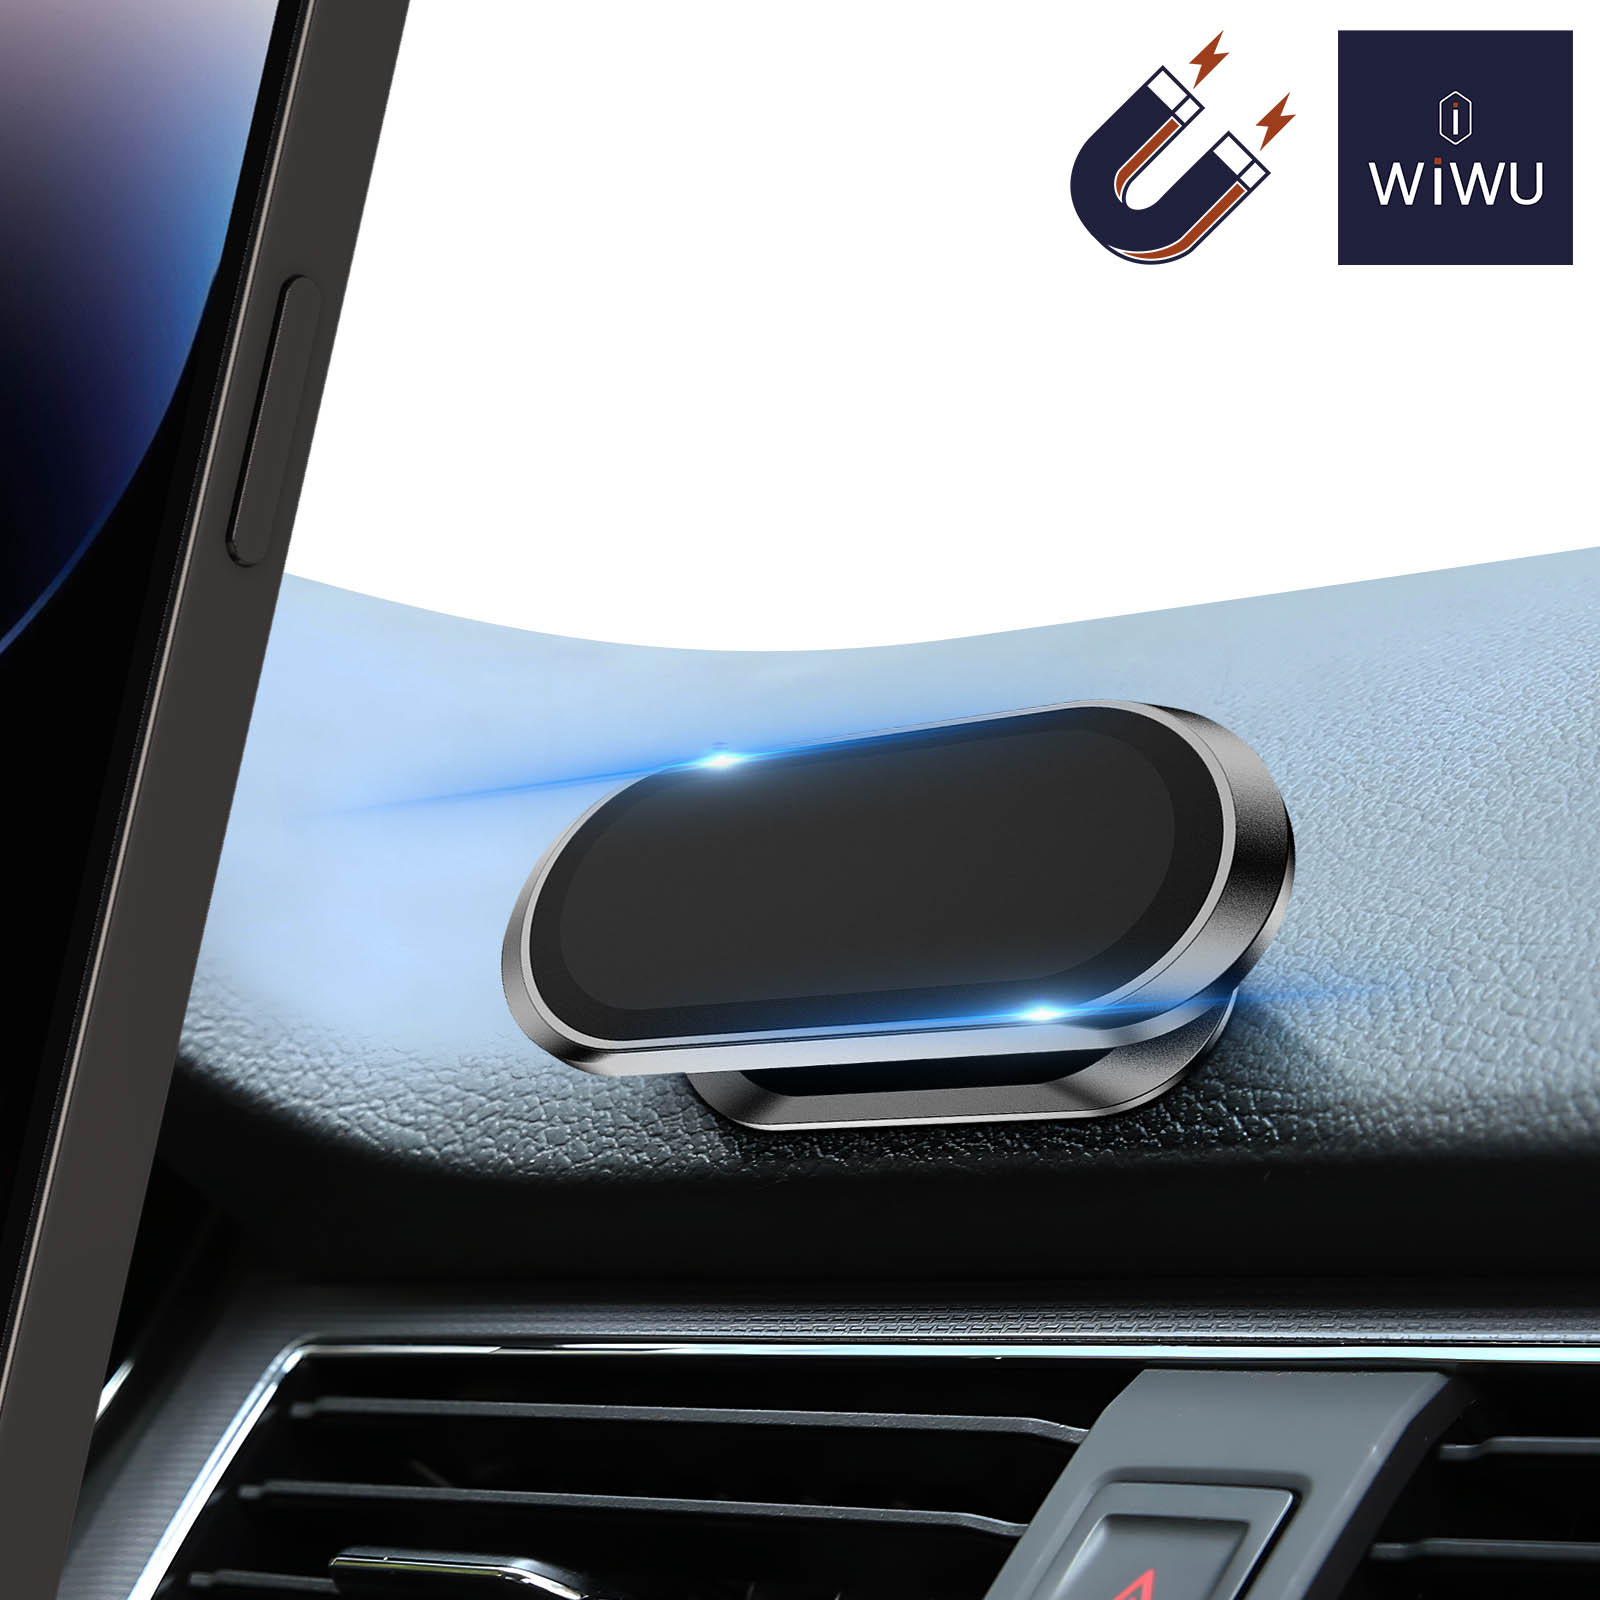 Magnetische Autohalterung für Smartphones, 360° drehbar - Wiwu